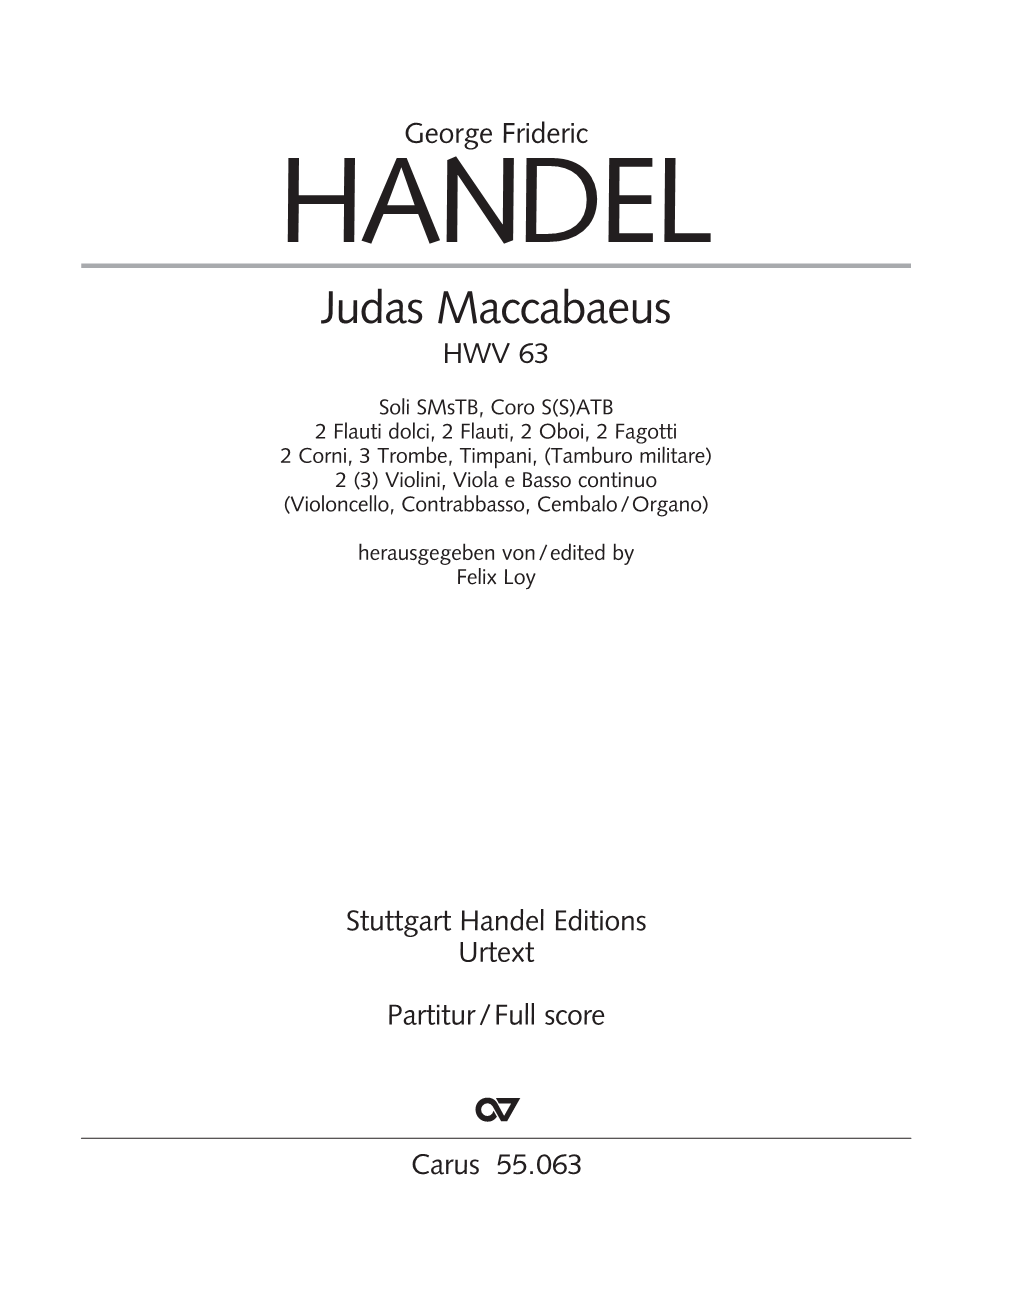 Judas Maccabaeus HWV 63